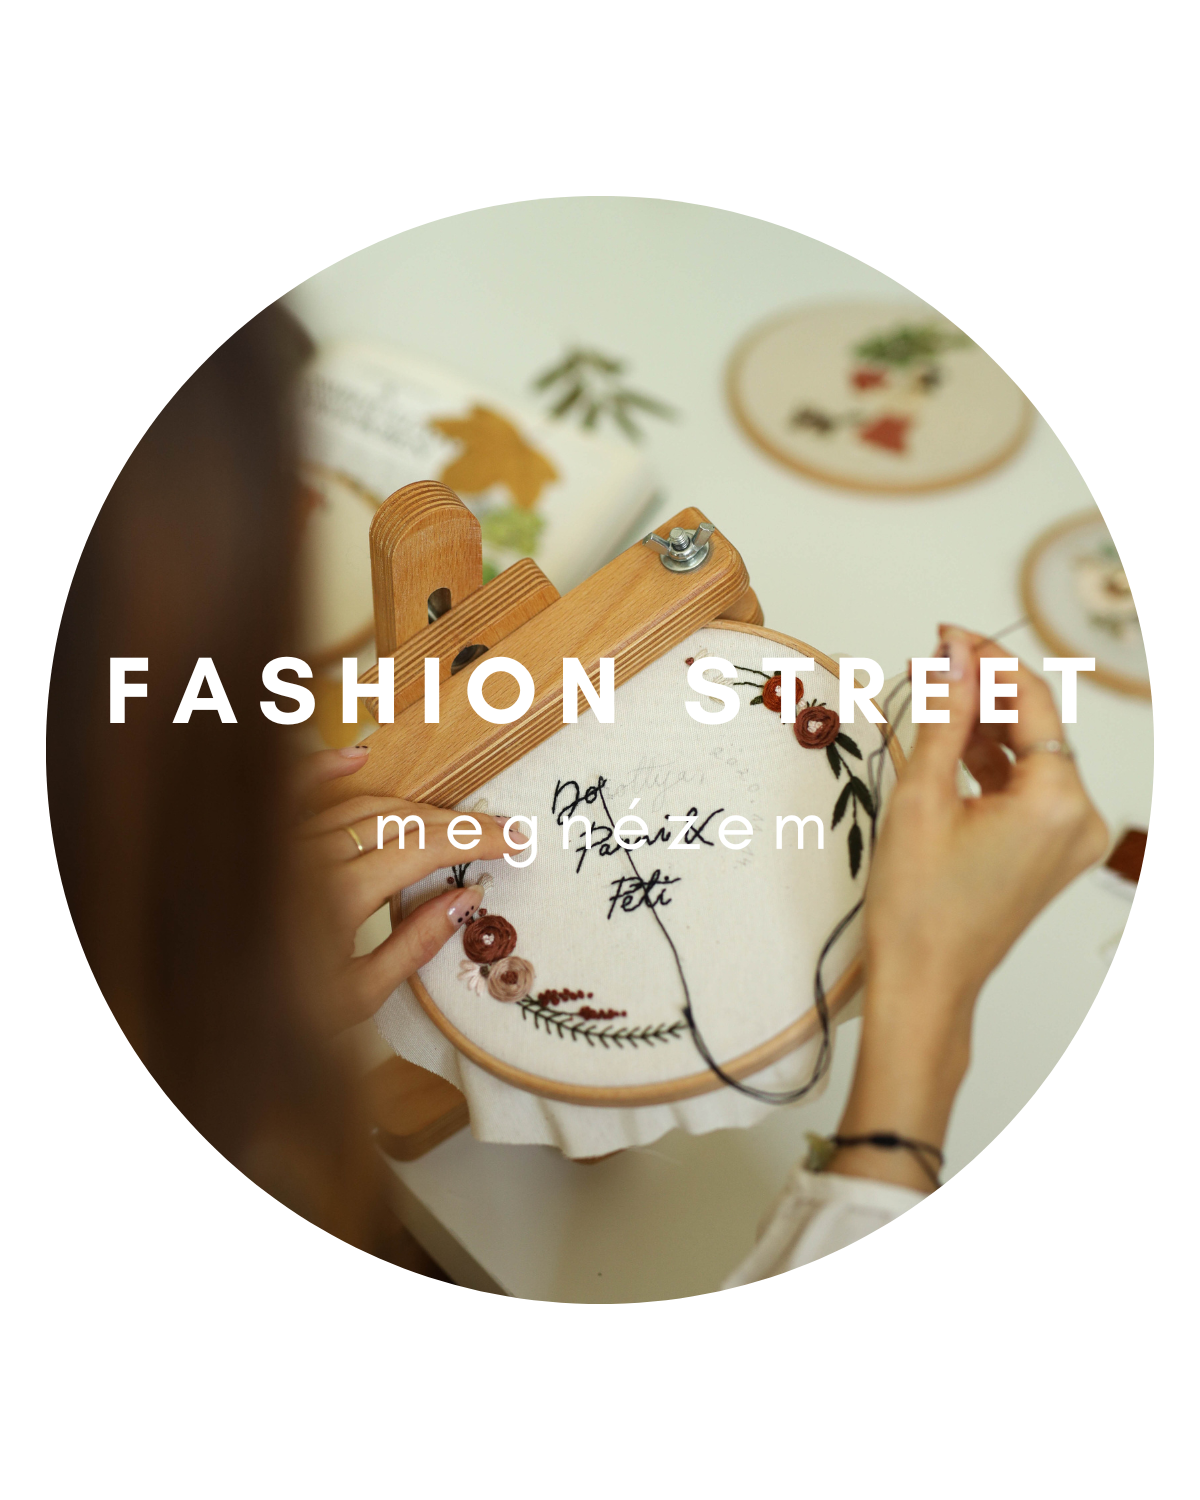 Fashion street - Kézműves vállalkozás